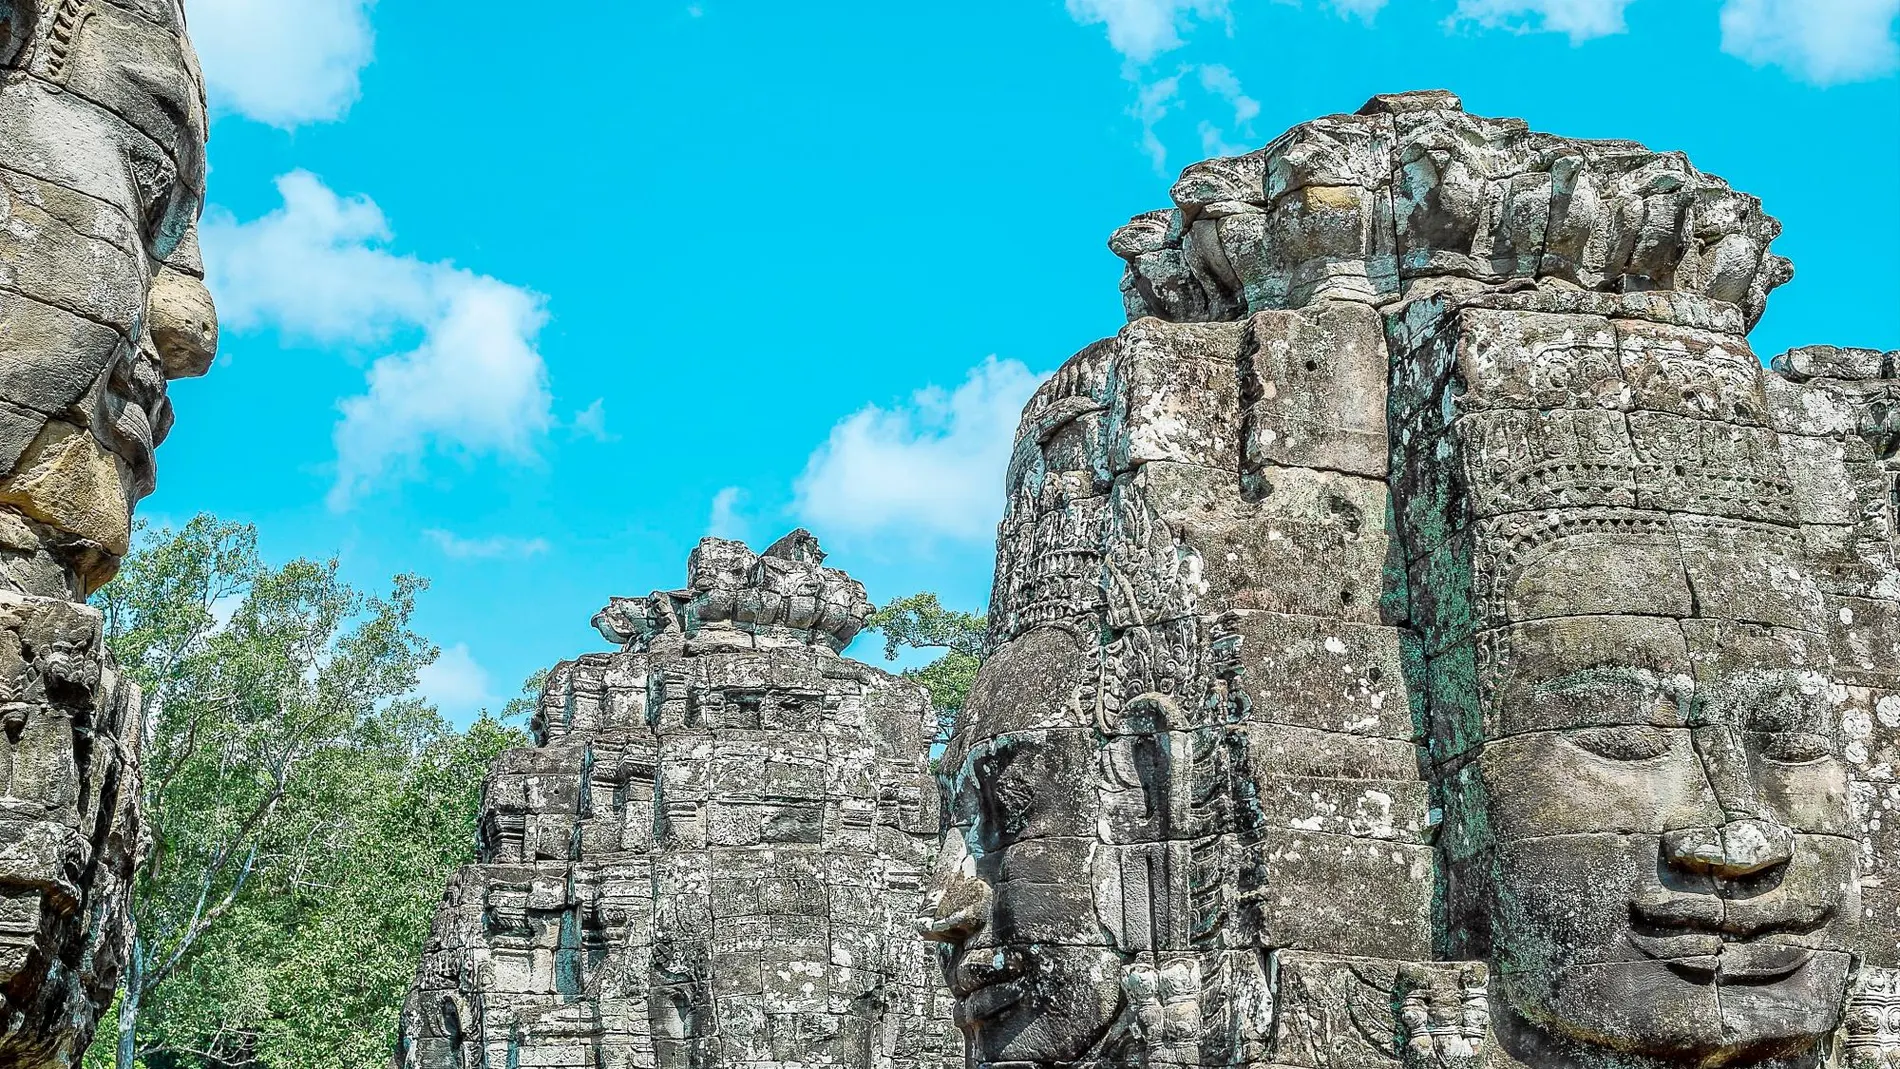 El conjunto arqueológico de las ruinas de Angkor se ha ganado, por méritos propios, un lugar destacado entre las maravillas de la antigüedad.